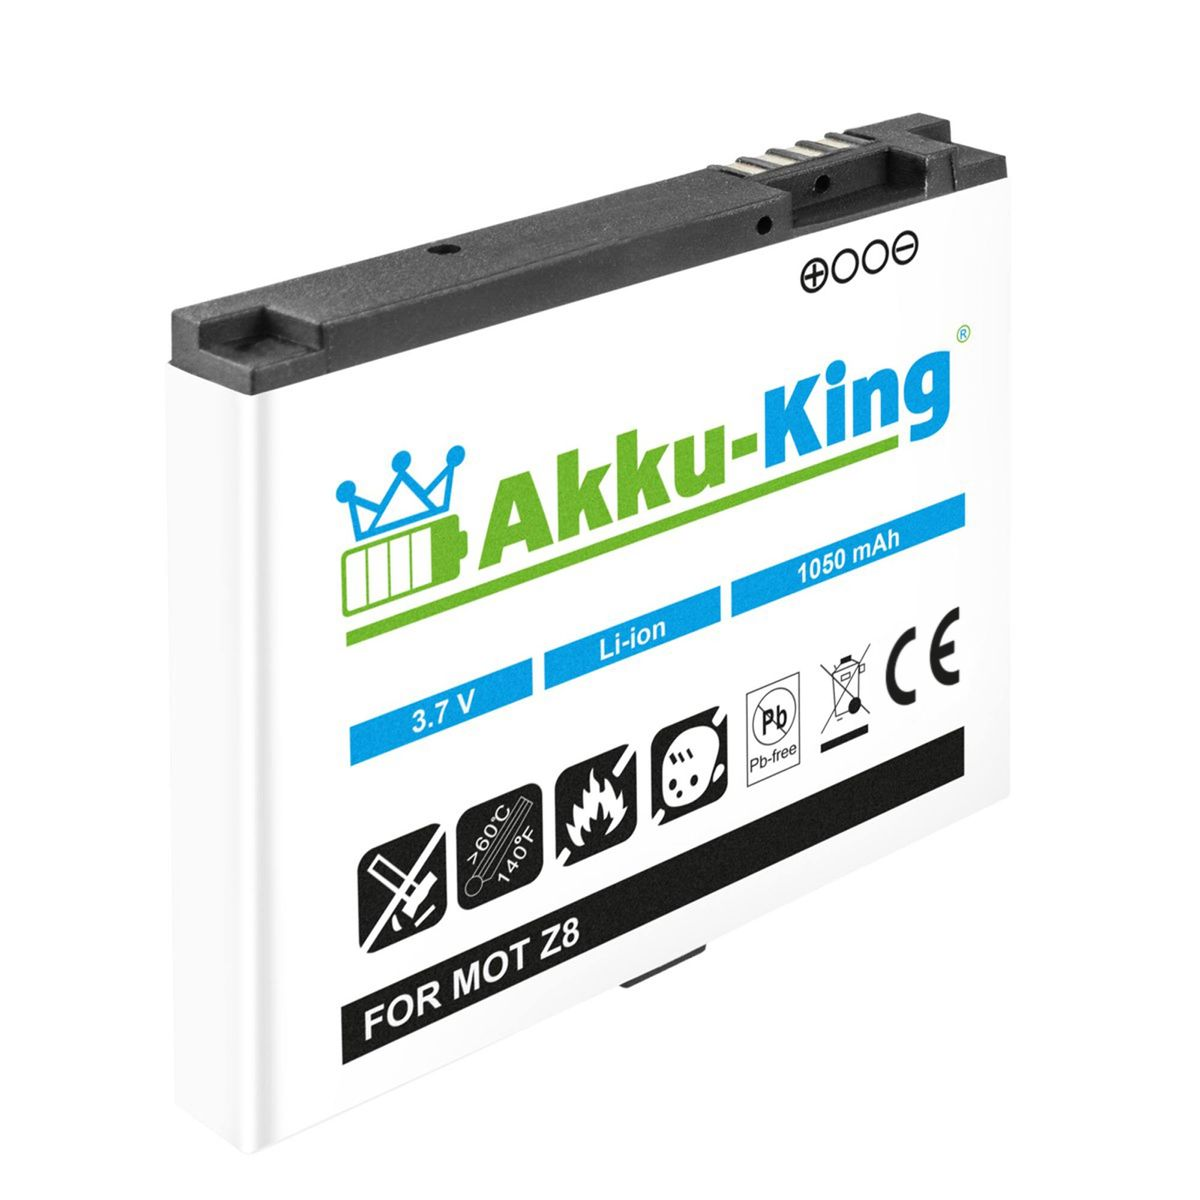 AKKU-KING Akku kompatibel mit Volt, Li-Ion Handy-Akku, Motorola BK70 3.7 1050mAh